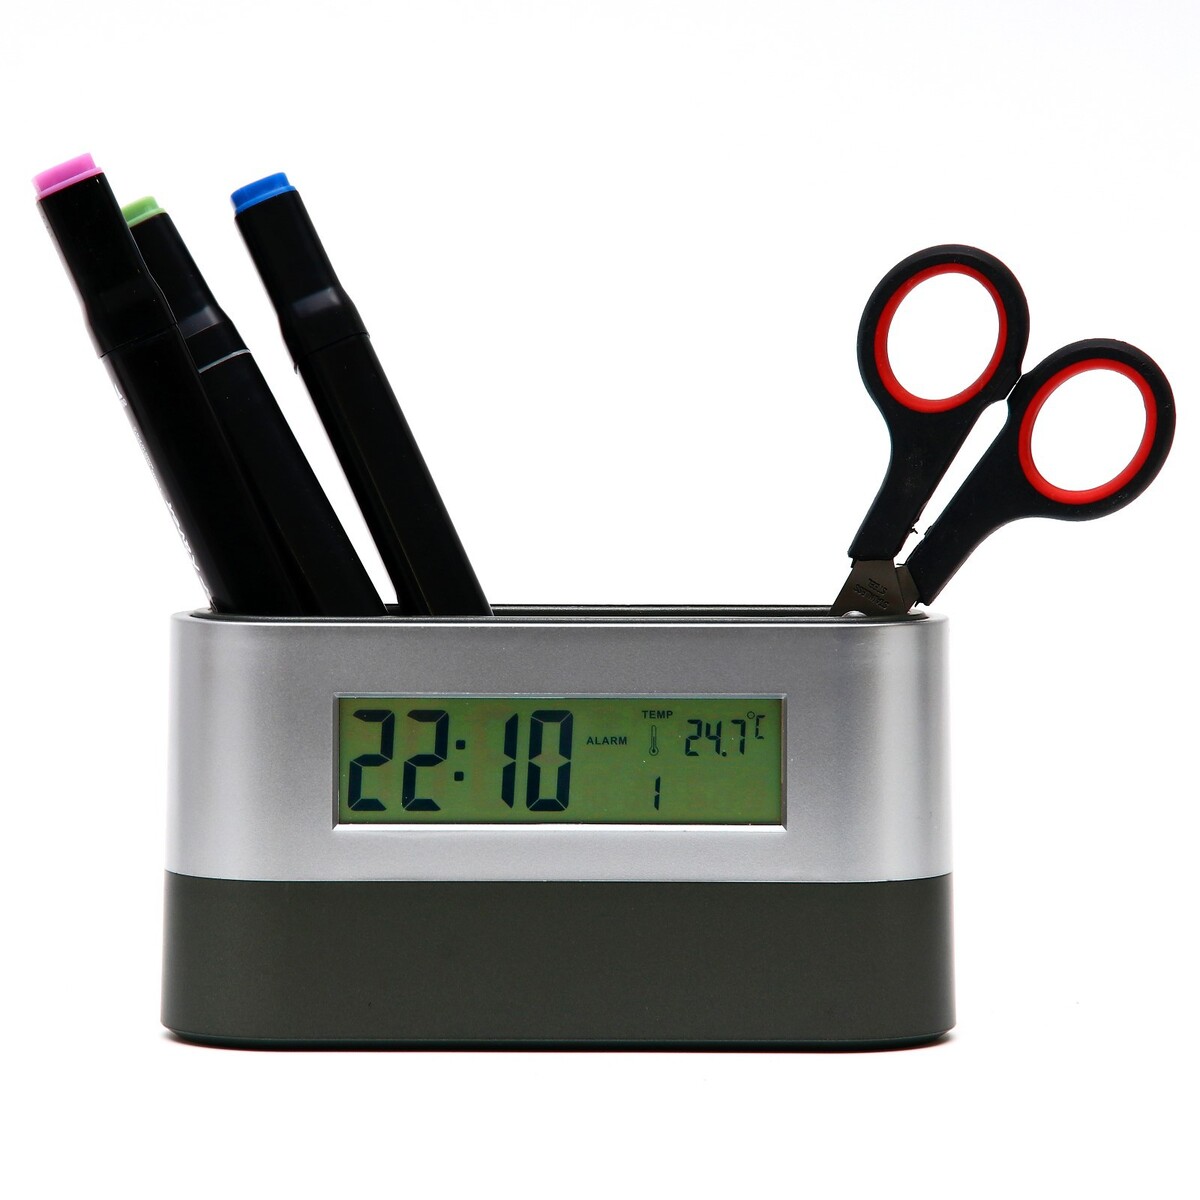 Часы - органайзер настольные: будильник, термометр, календарь, 15.1 х 4.7 см, 2ааа No brand